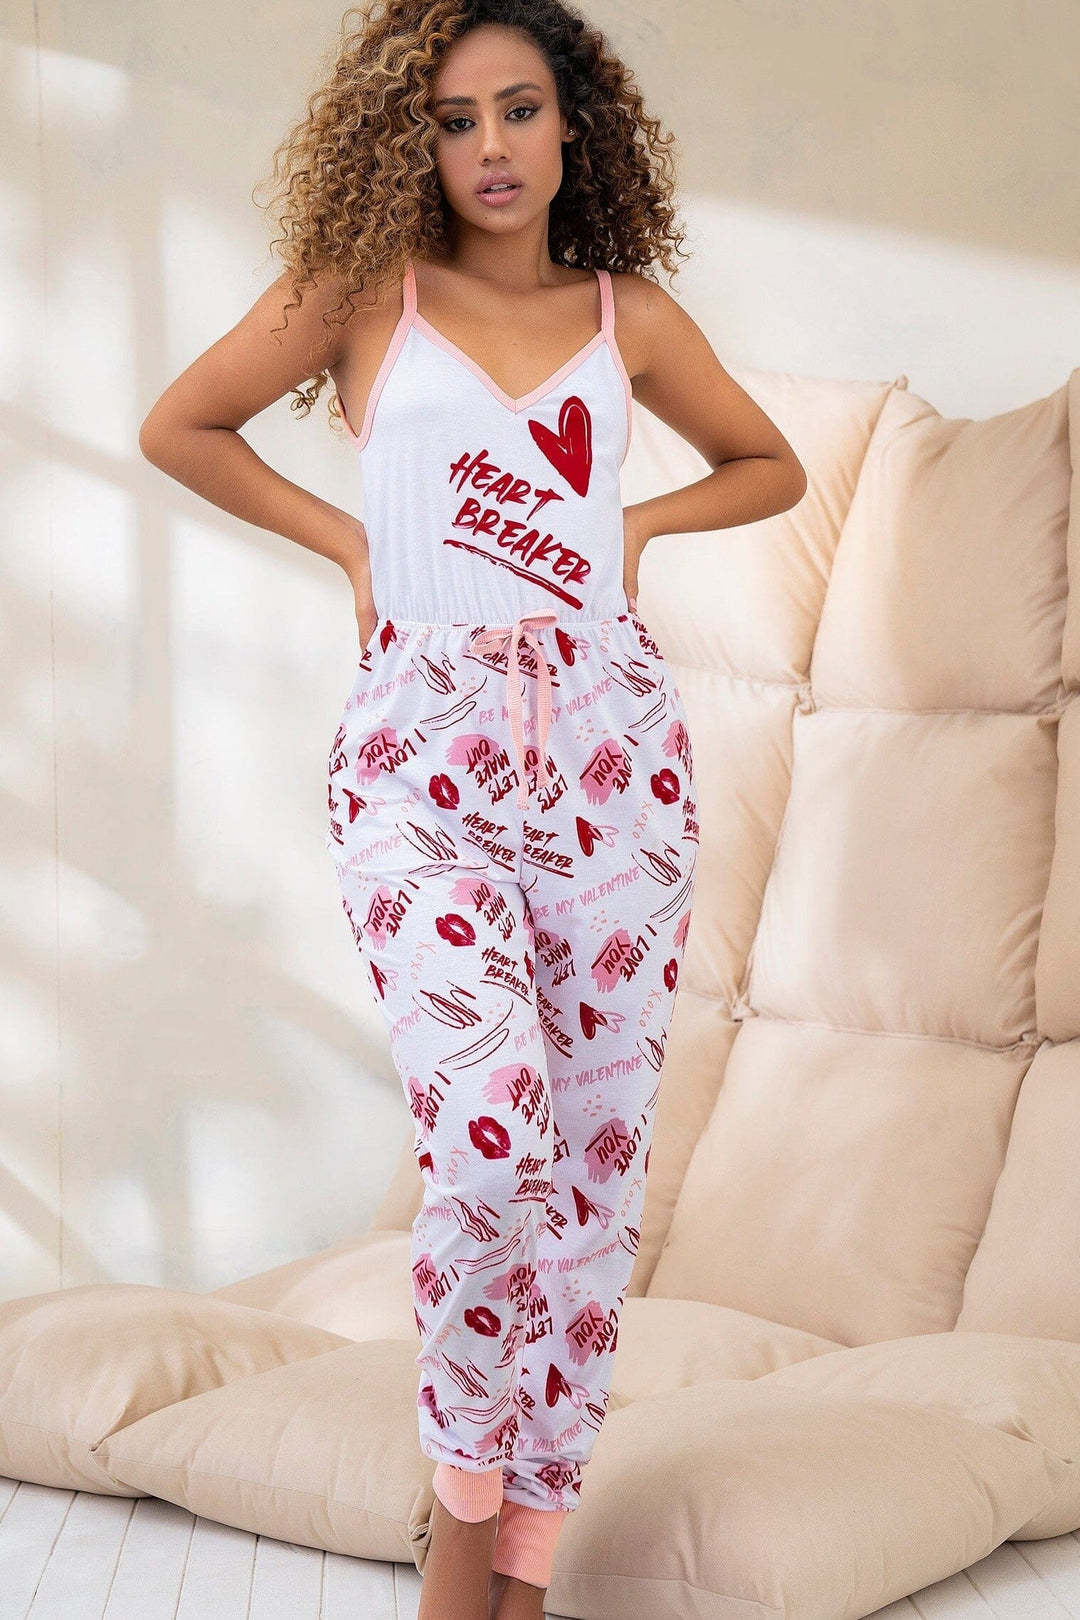 Onesie w/ Valentine's Day Print-Sleepwear-Mapale-White-S-SEXYSHOES.COM